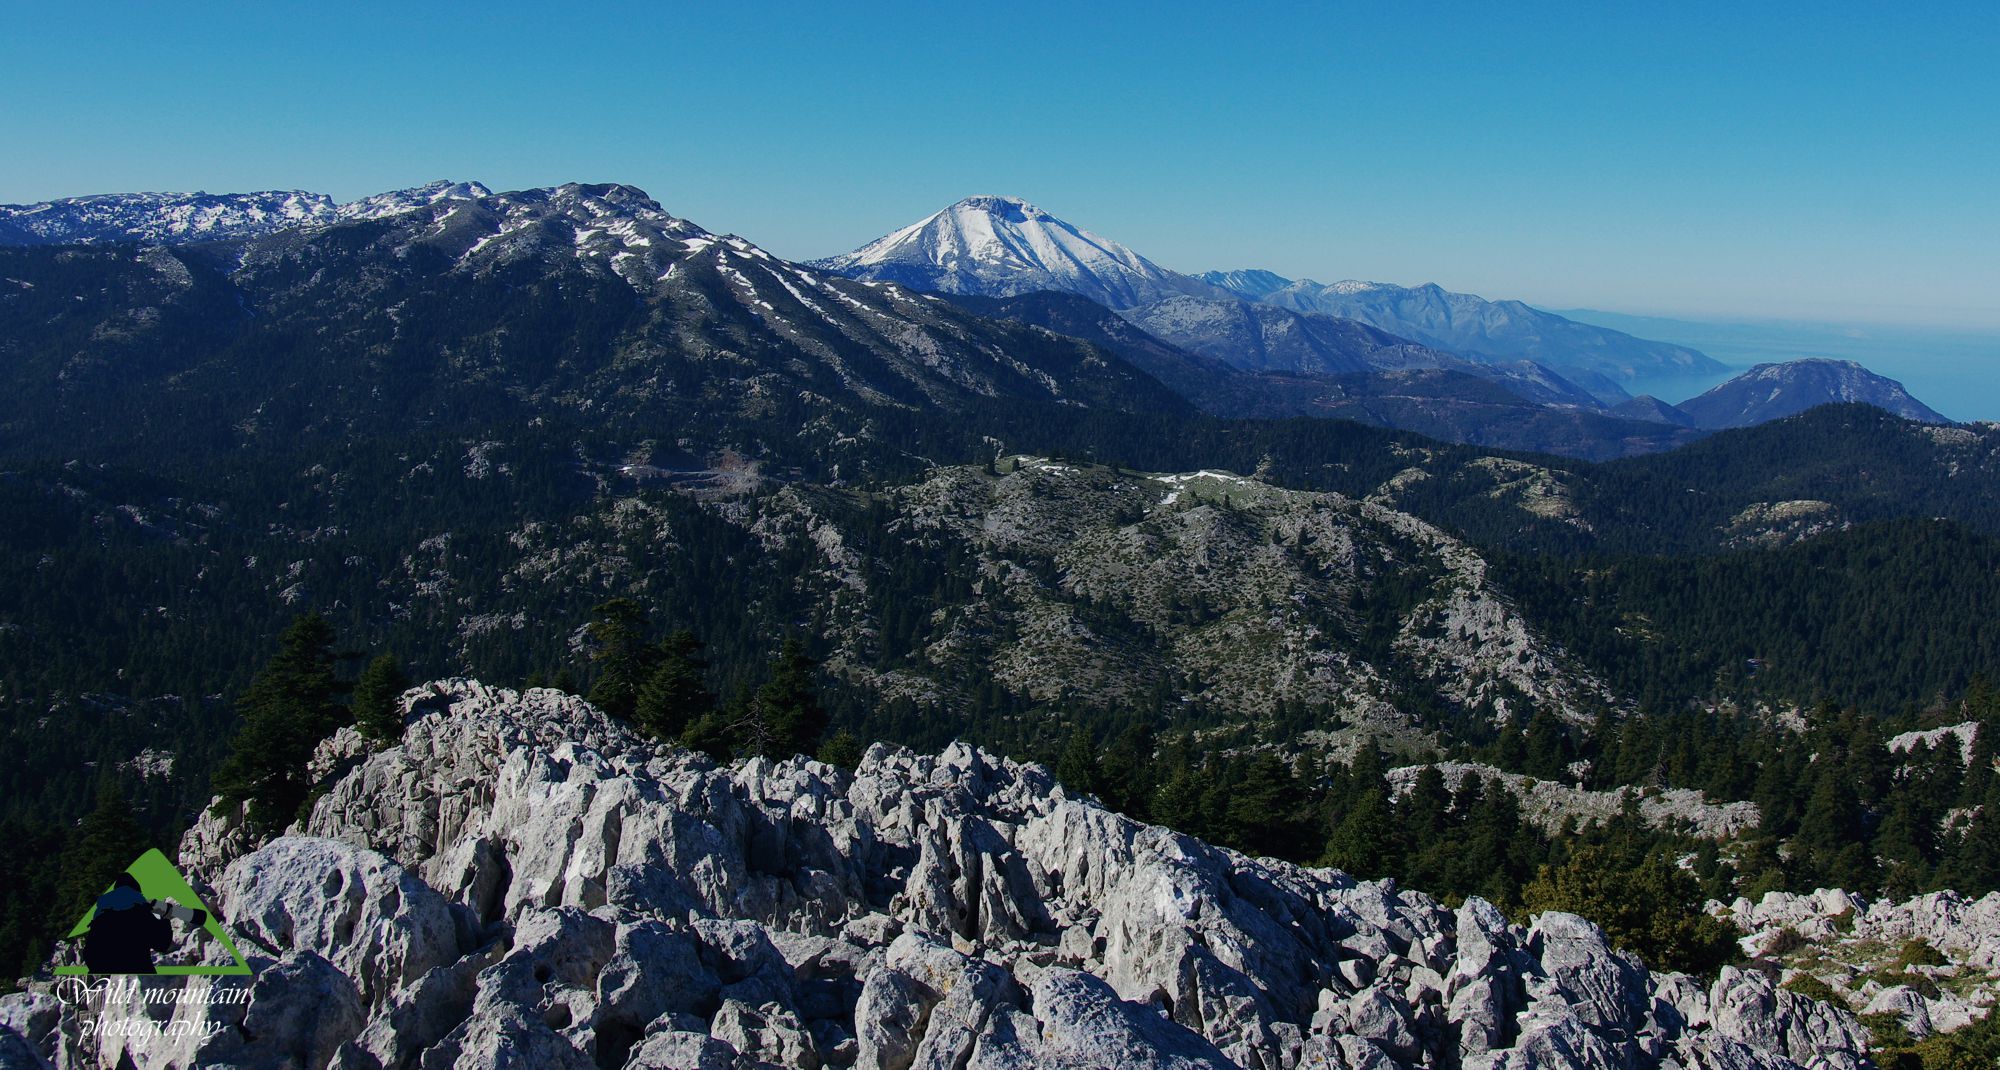 Οι βιότοποι της Δίρφυος: Η Δίρφυ αποτελεί το ψηλότερο και πιο συμπαγές τμήμα της μεγάλης οροσειράς της Κεντρικής Εύβοιας